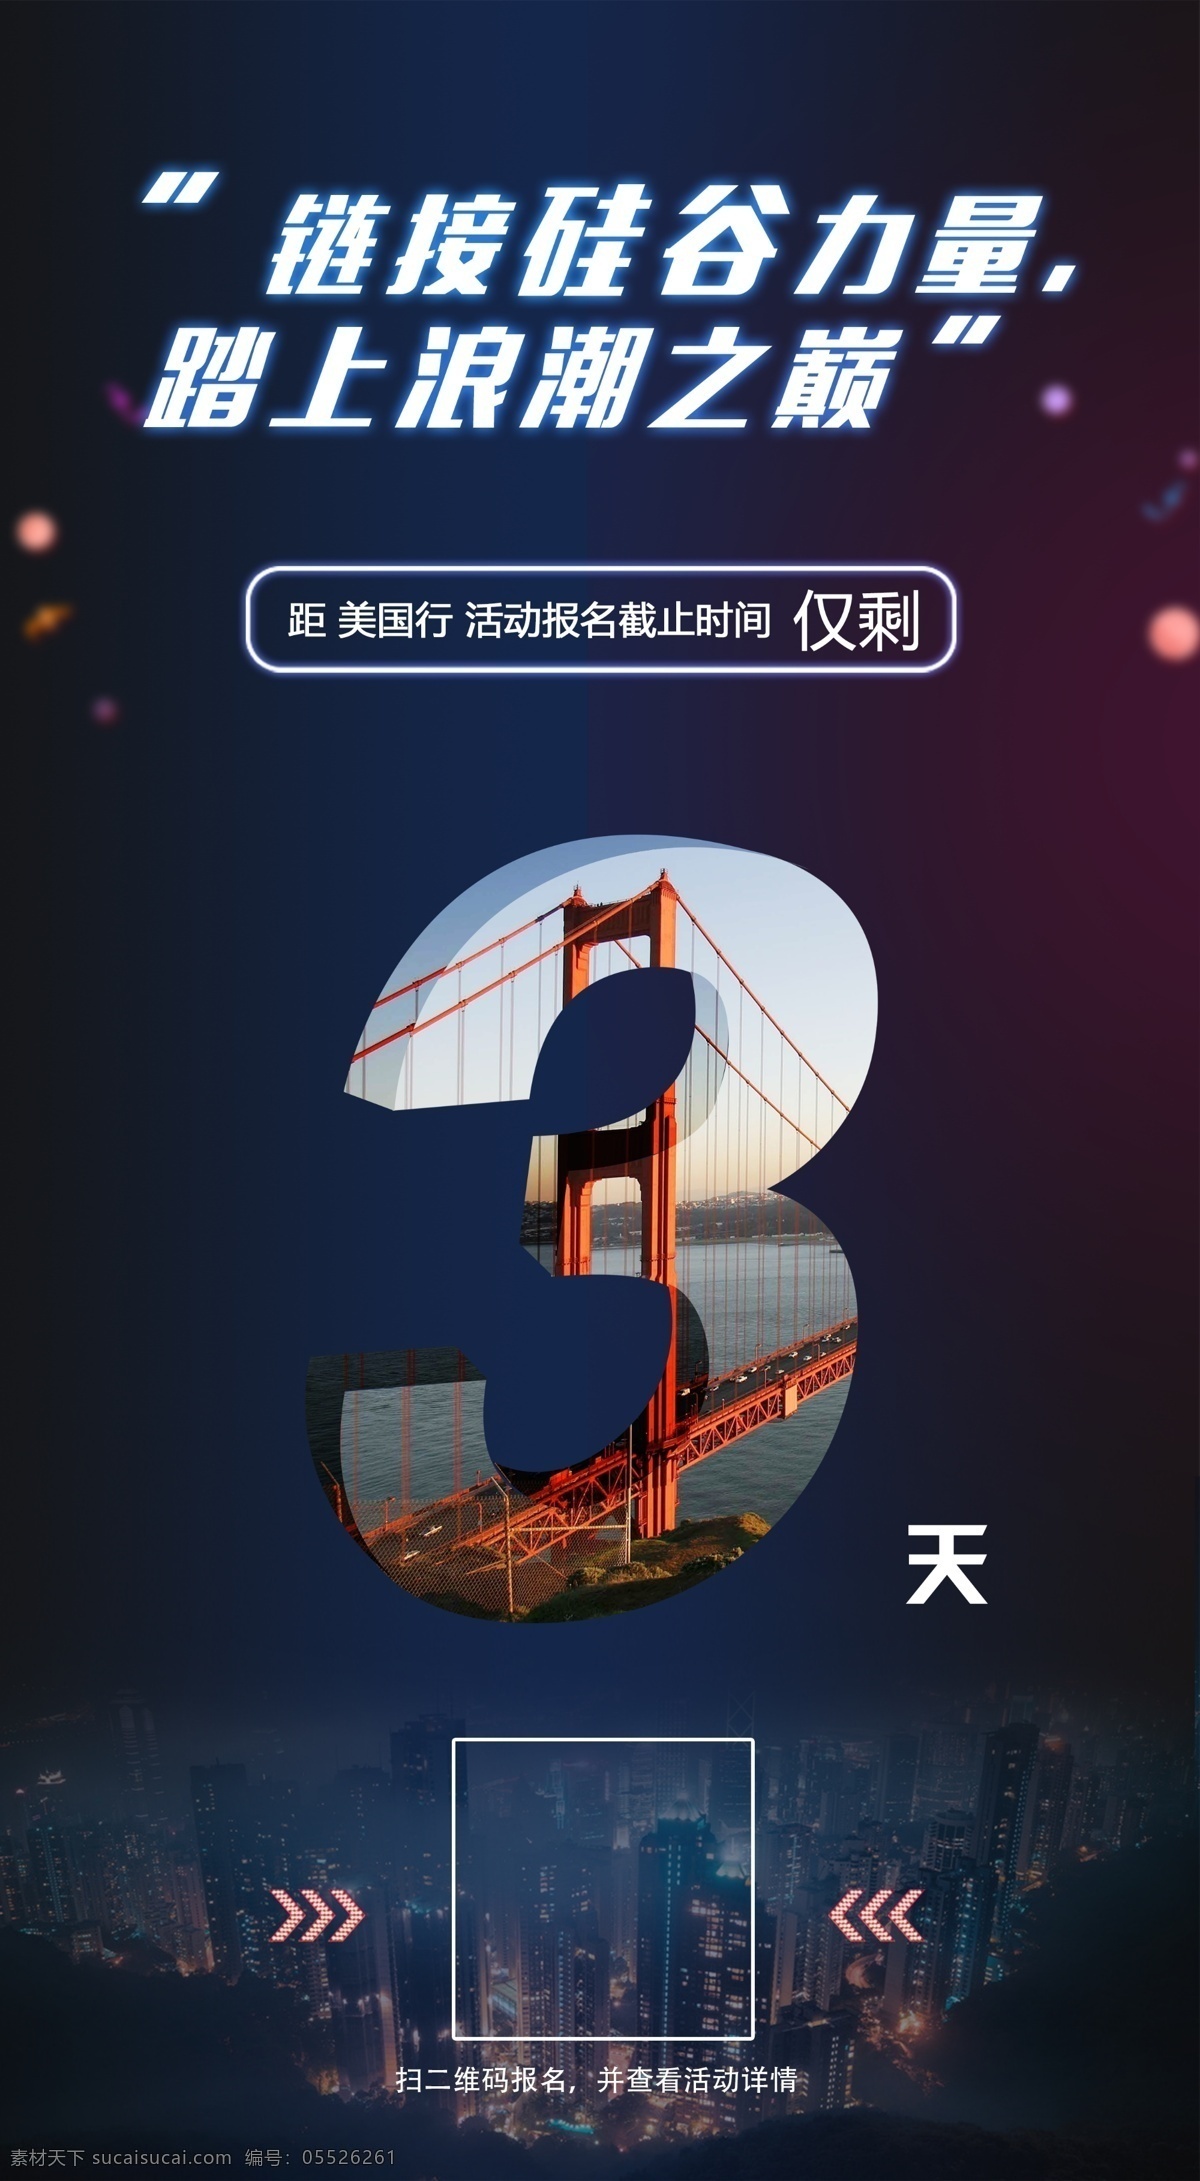 倒计时 图 天 海报 配 宣传 3天 硅谷 活动 金门大桥 美国 时间